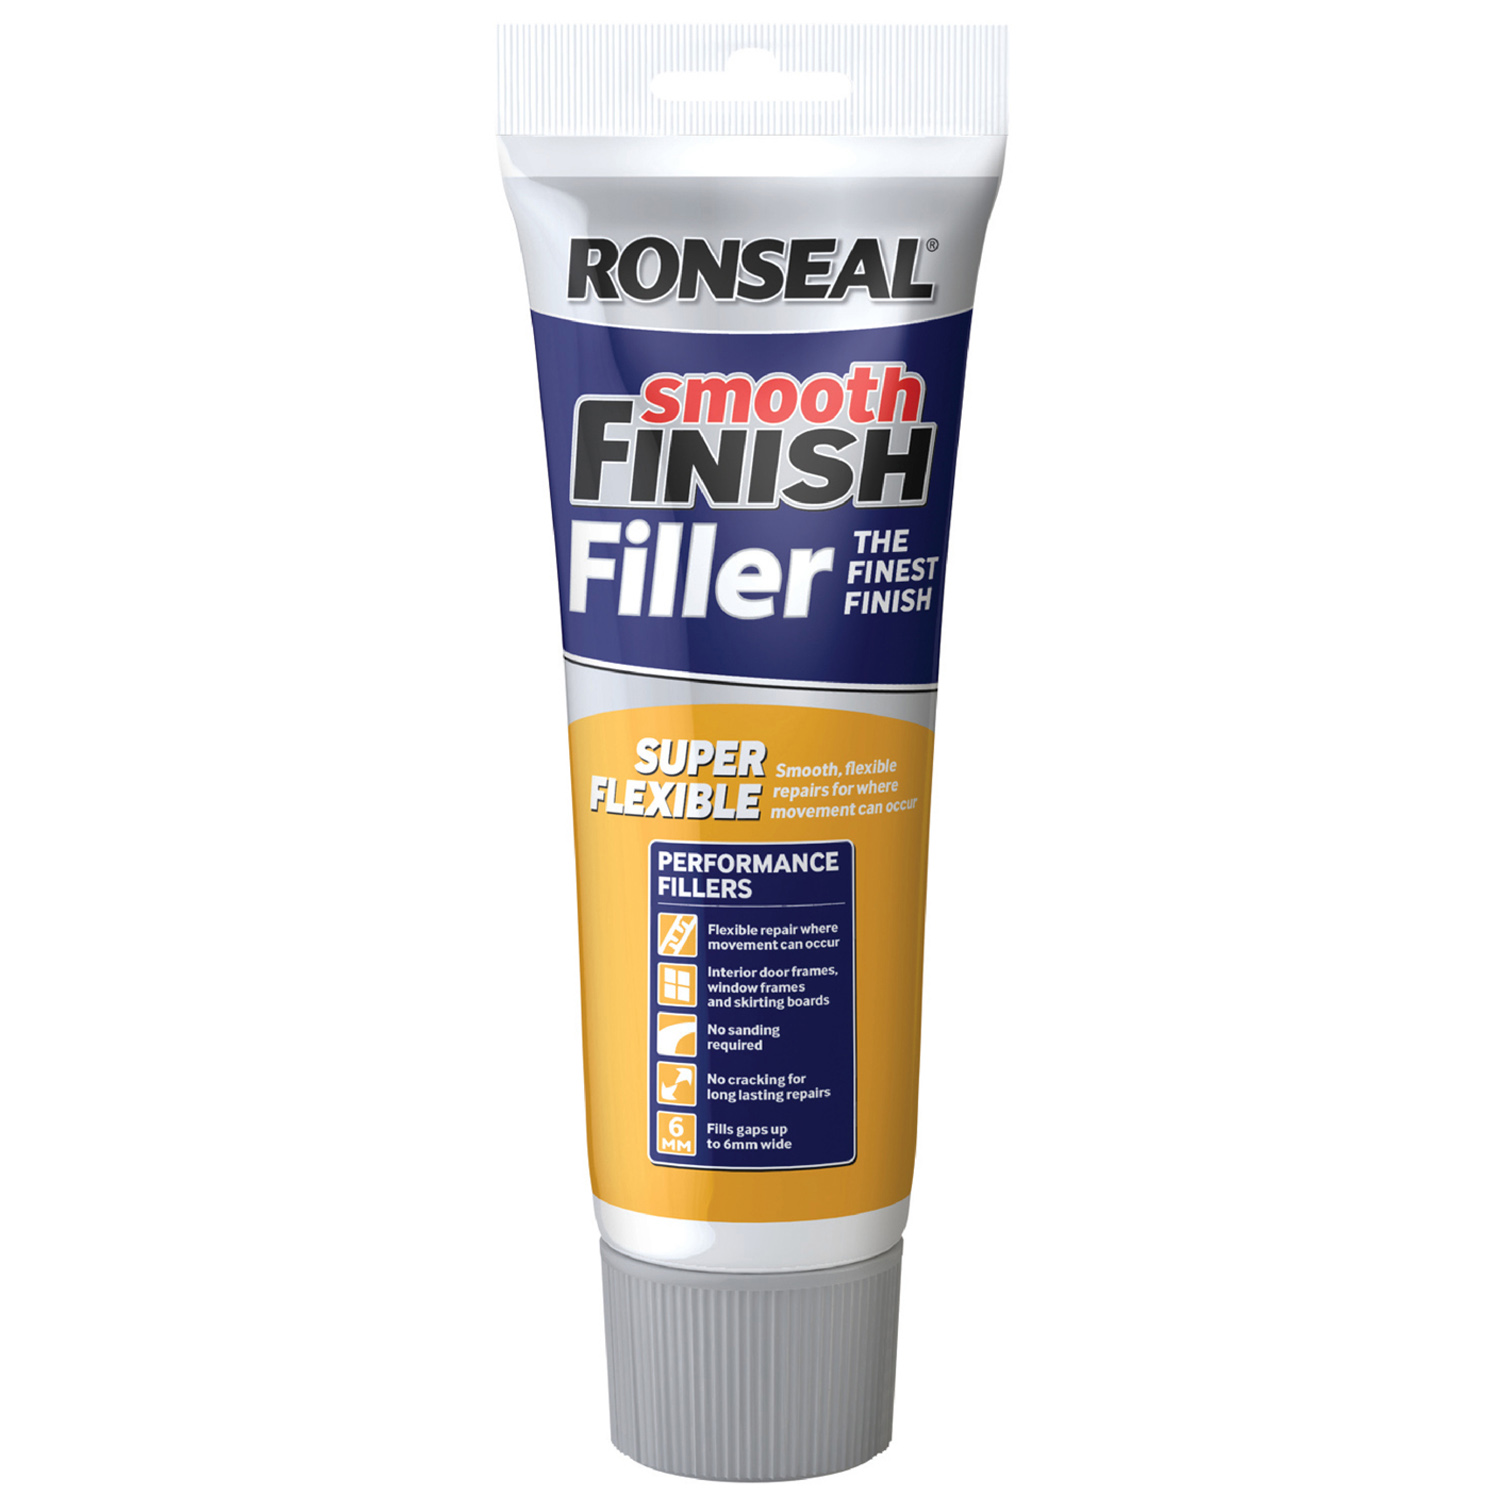 Ronseal Super Flexible Filler 330g Image